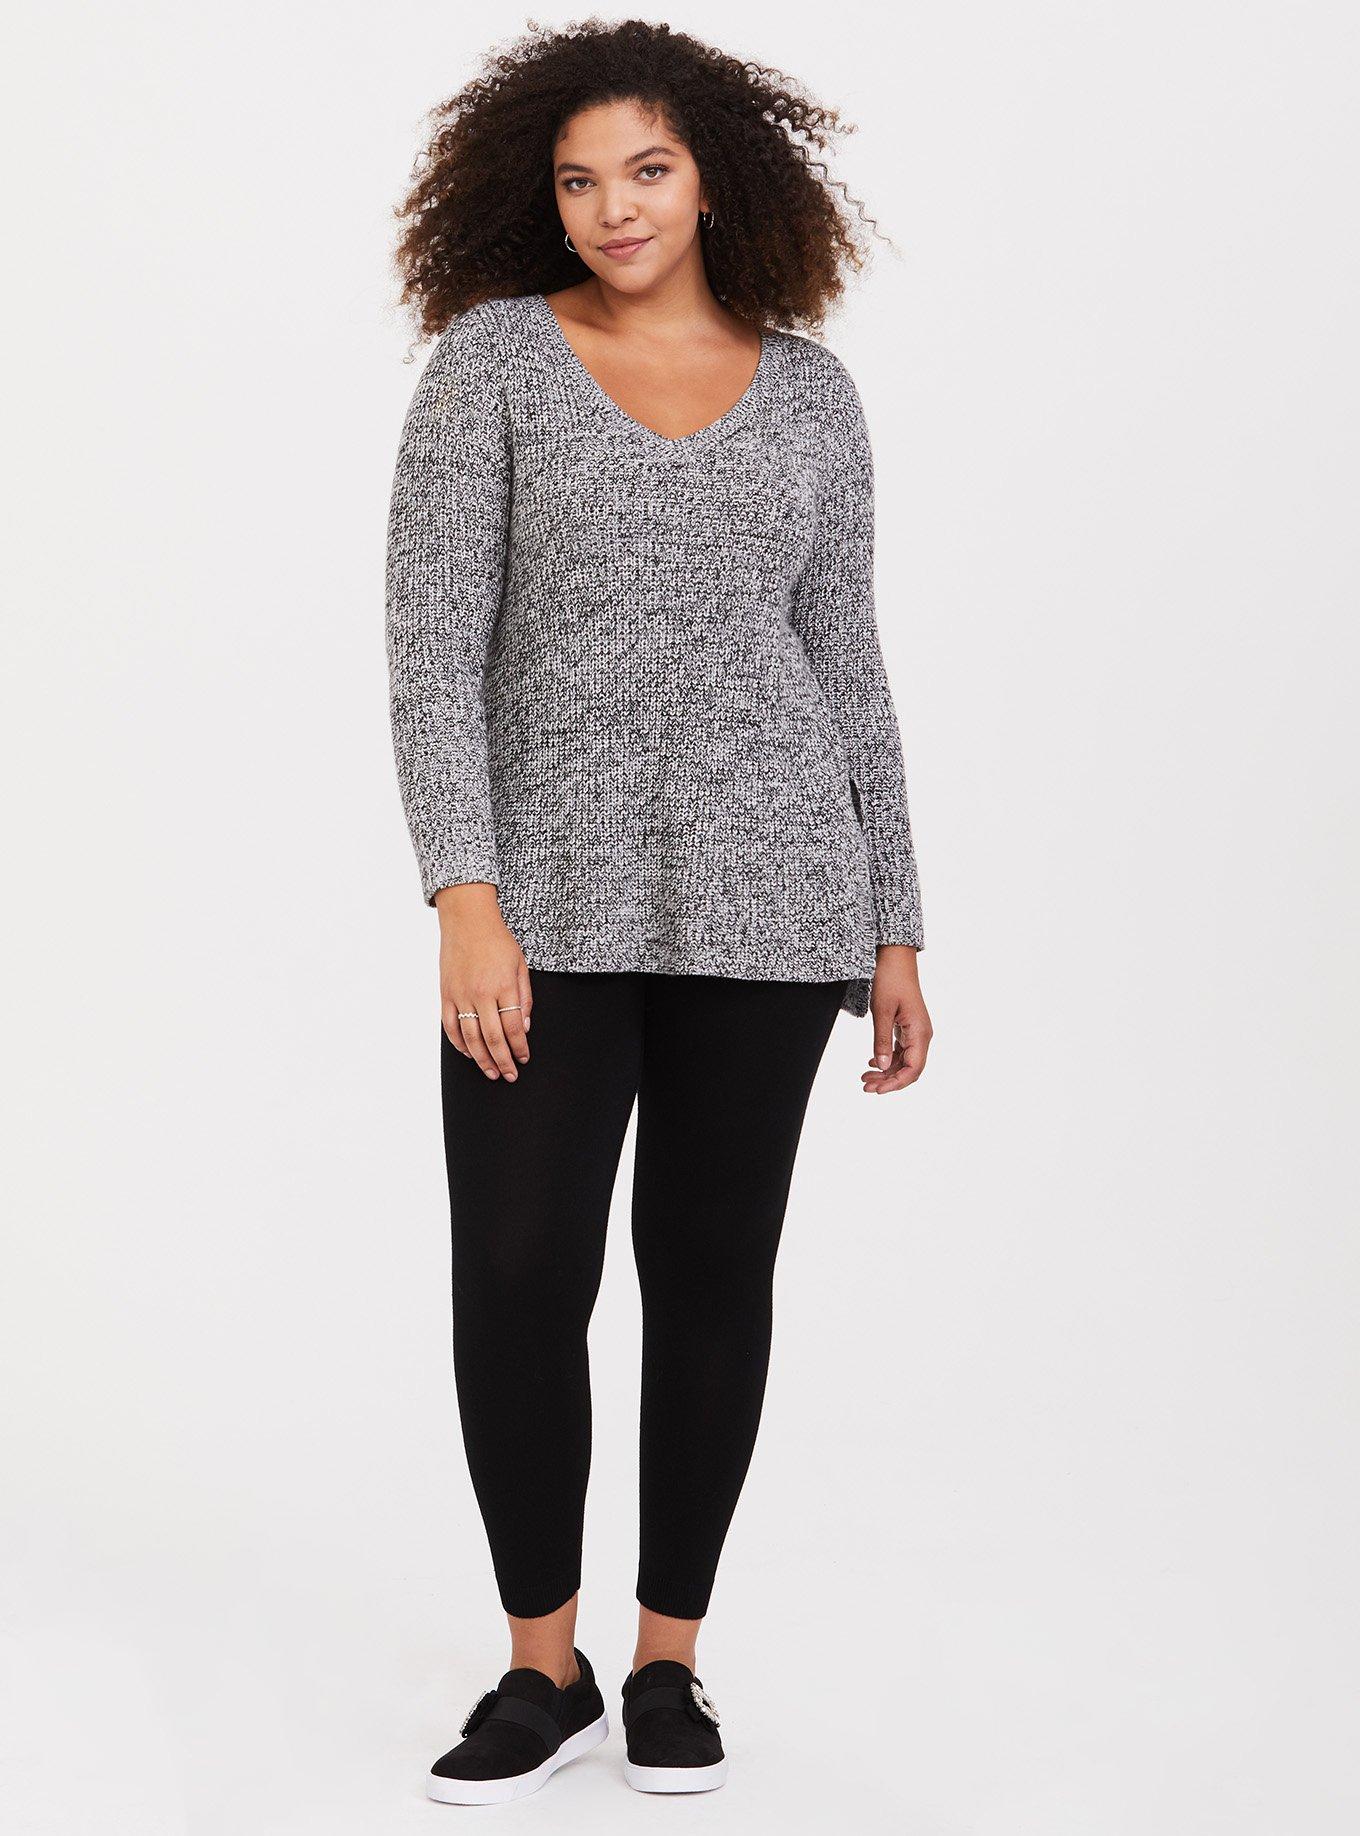 Plus Size - Sweater Leggings - Torrid